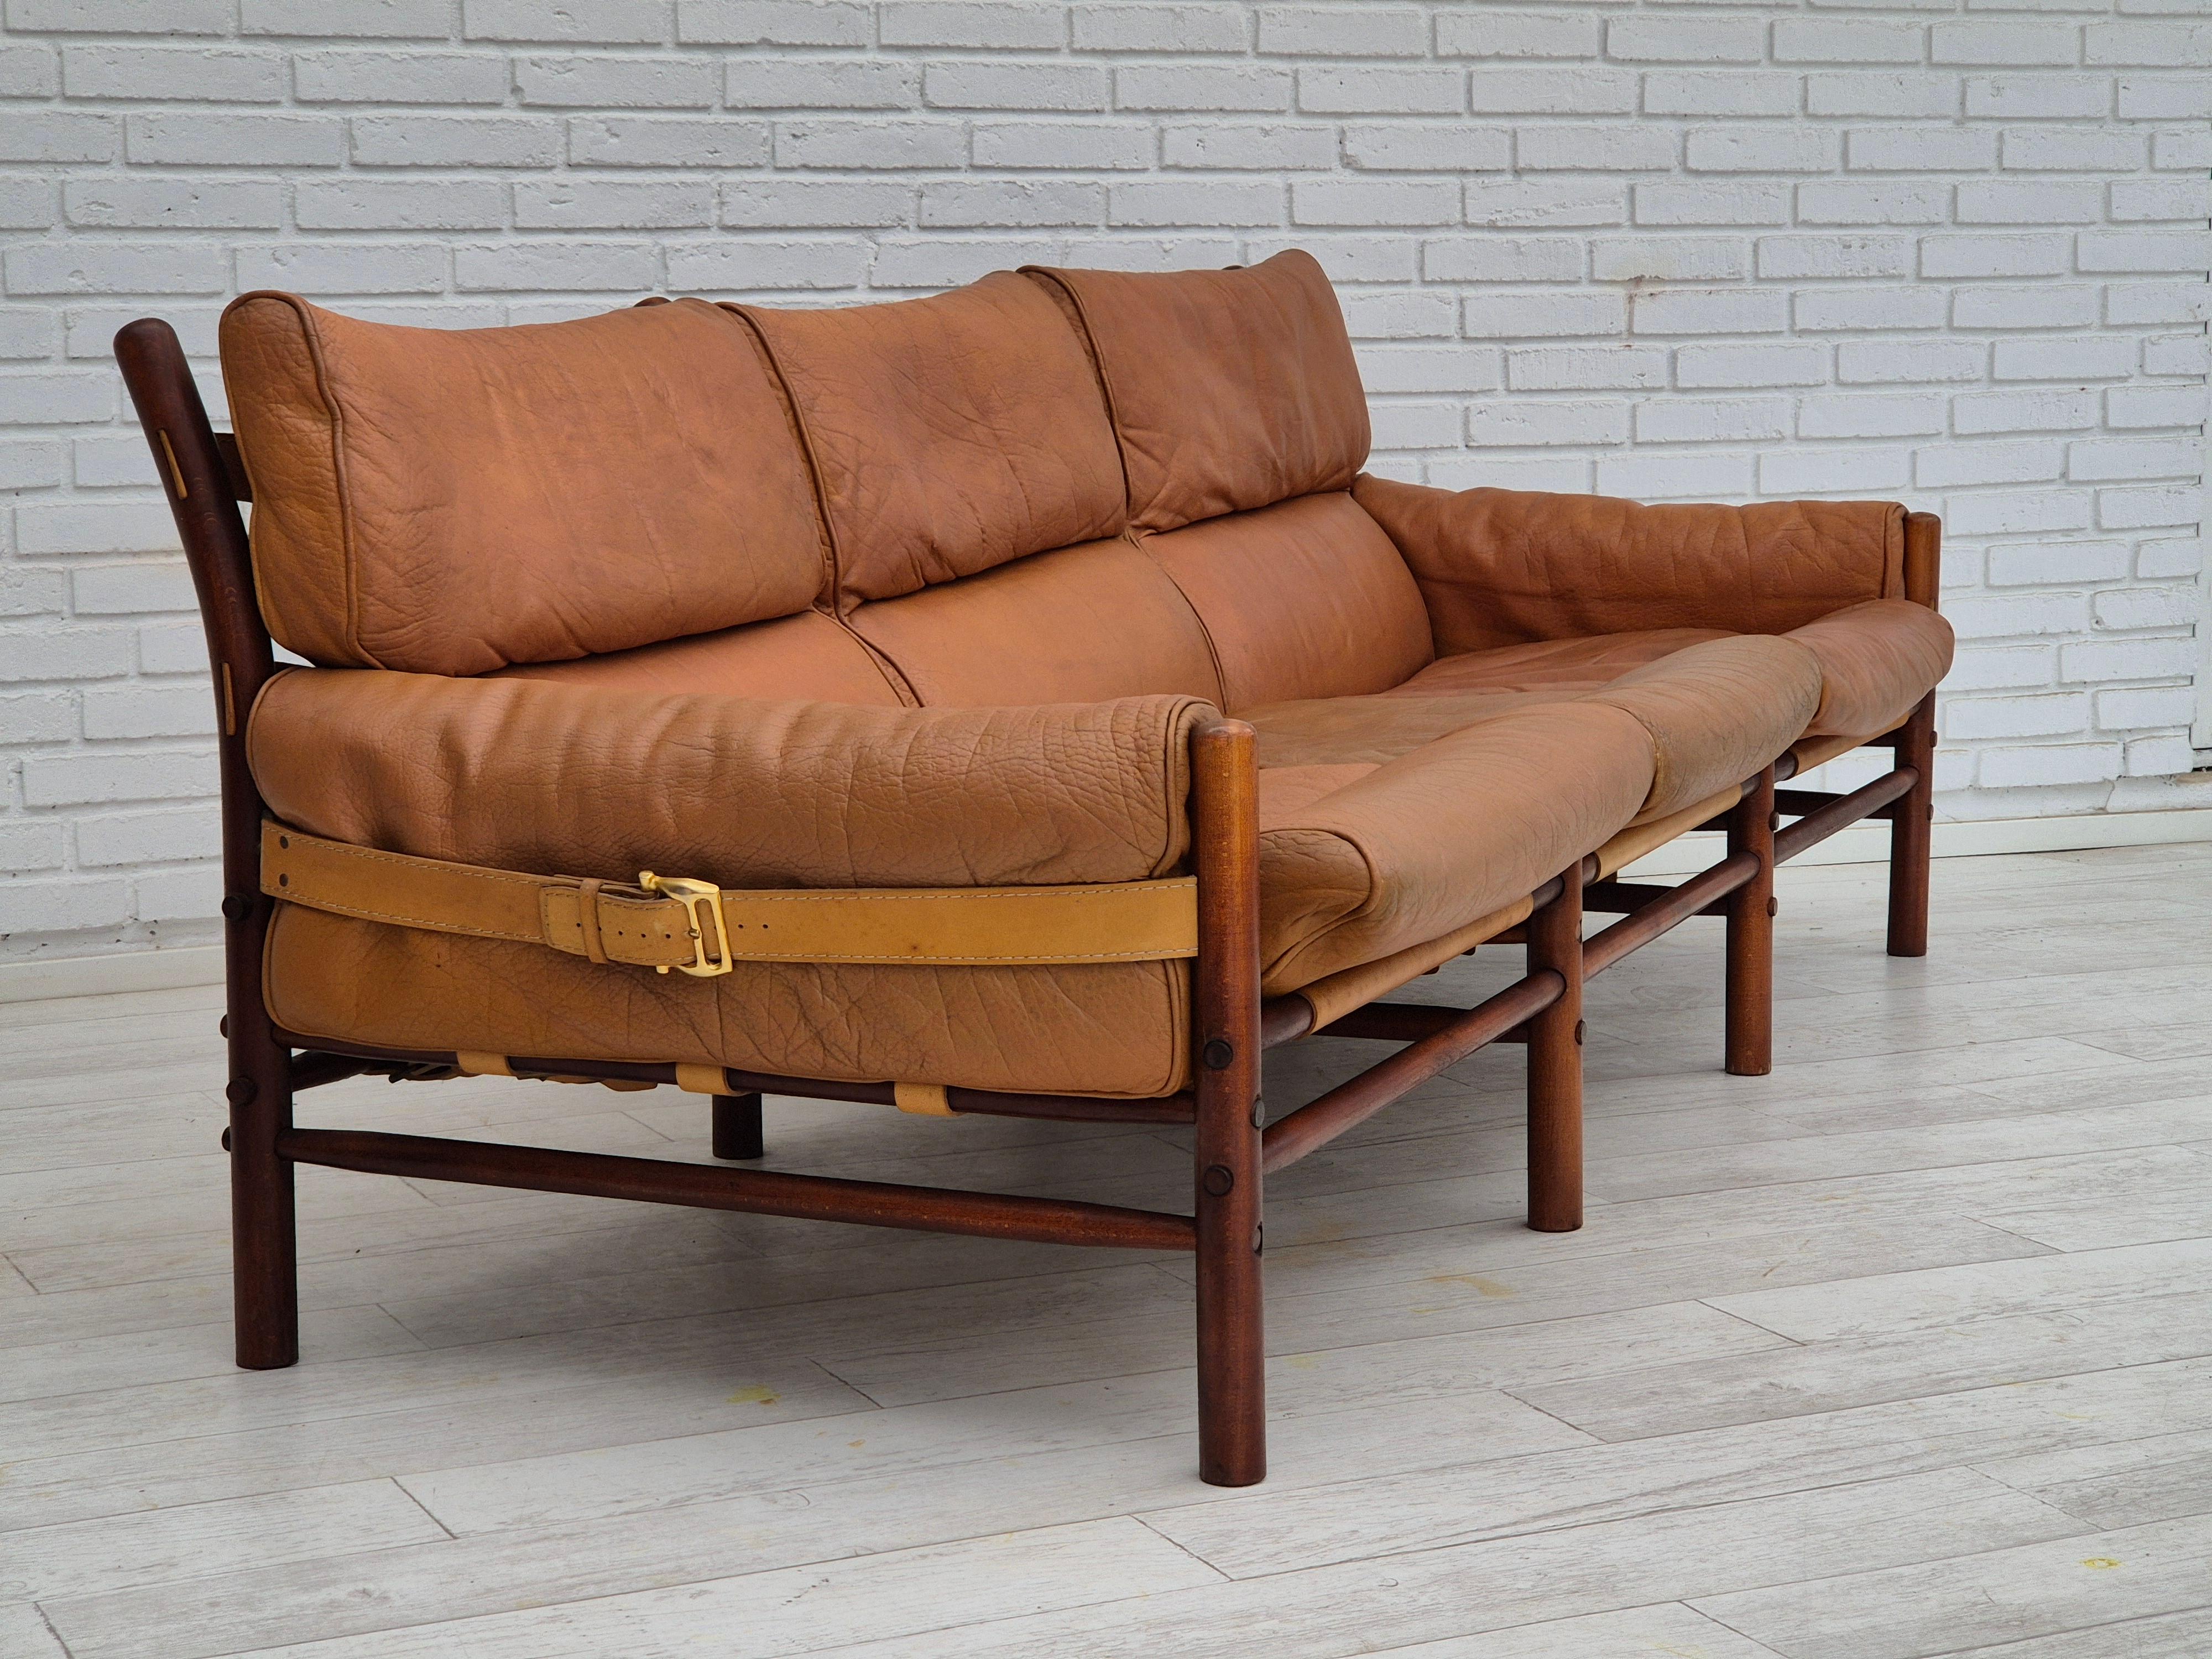 Scandinavian Modern 1960s, Scandinavian design by Arne Norell, sofa, model 